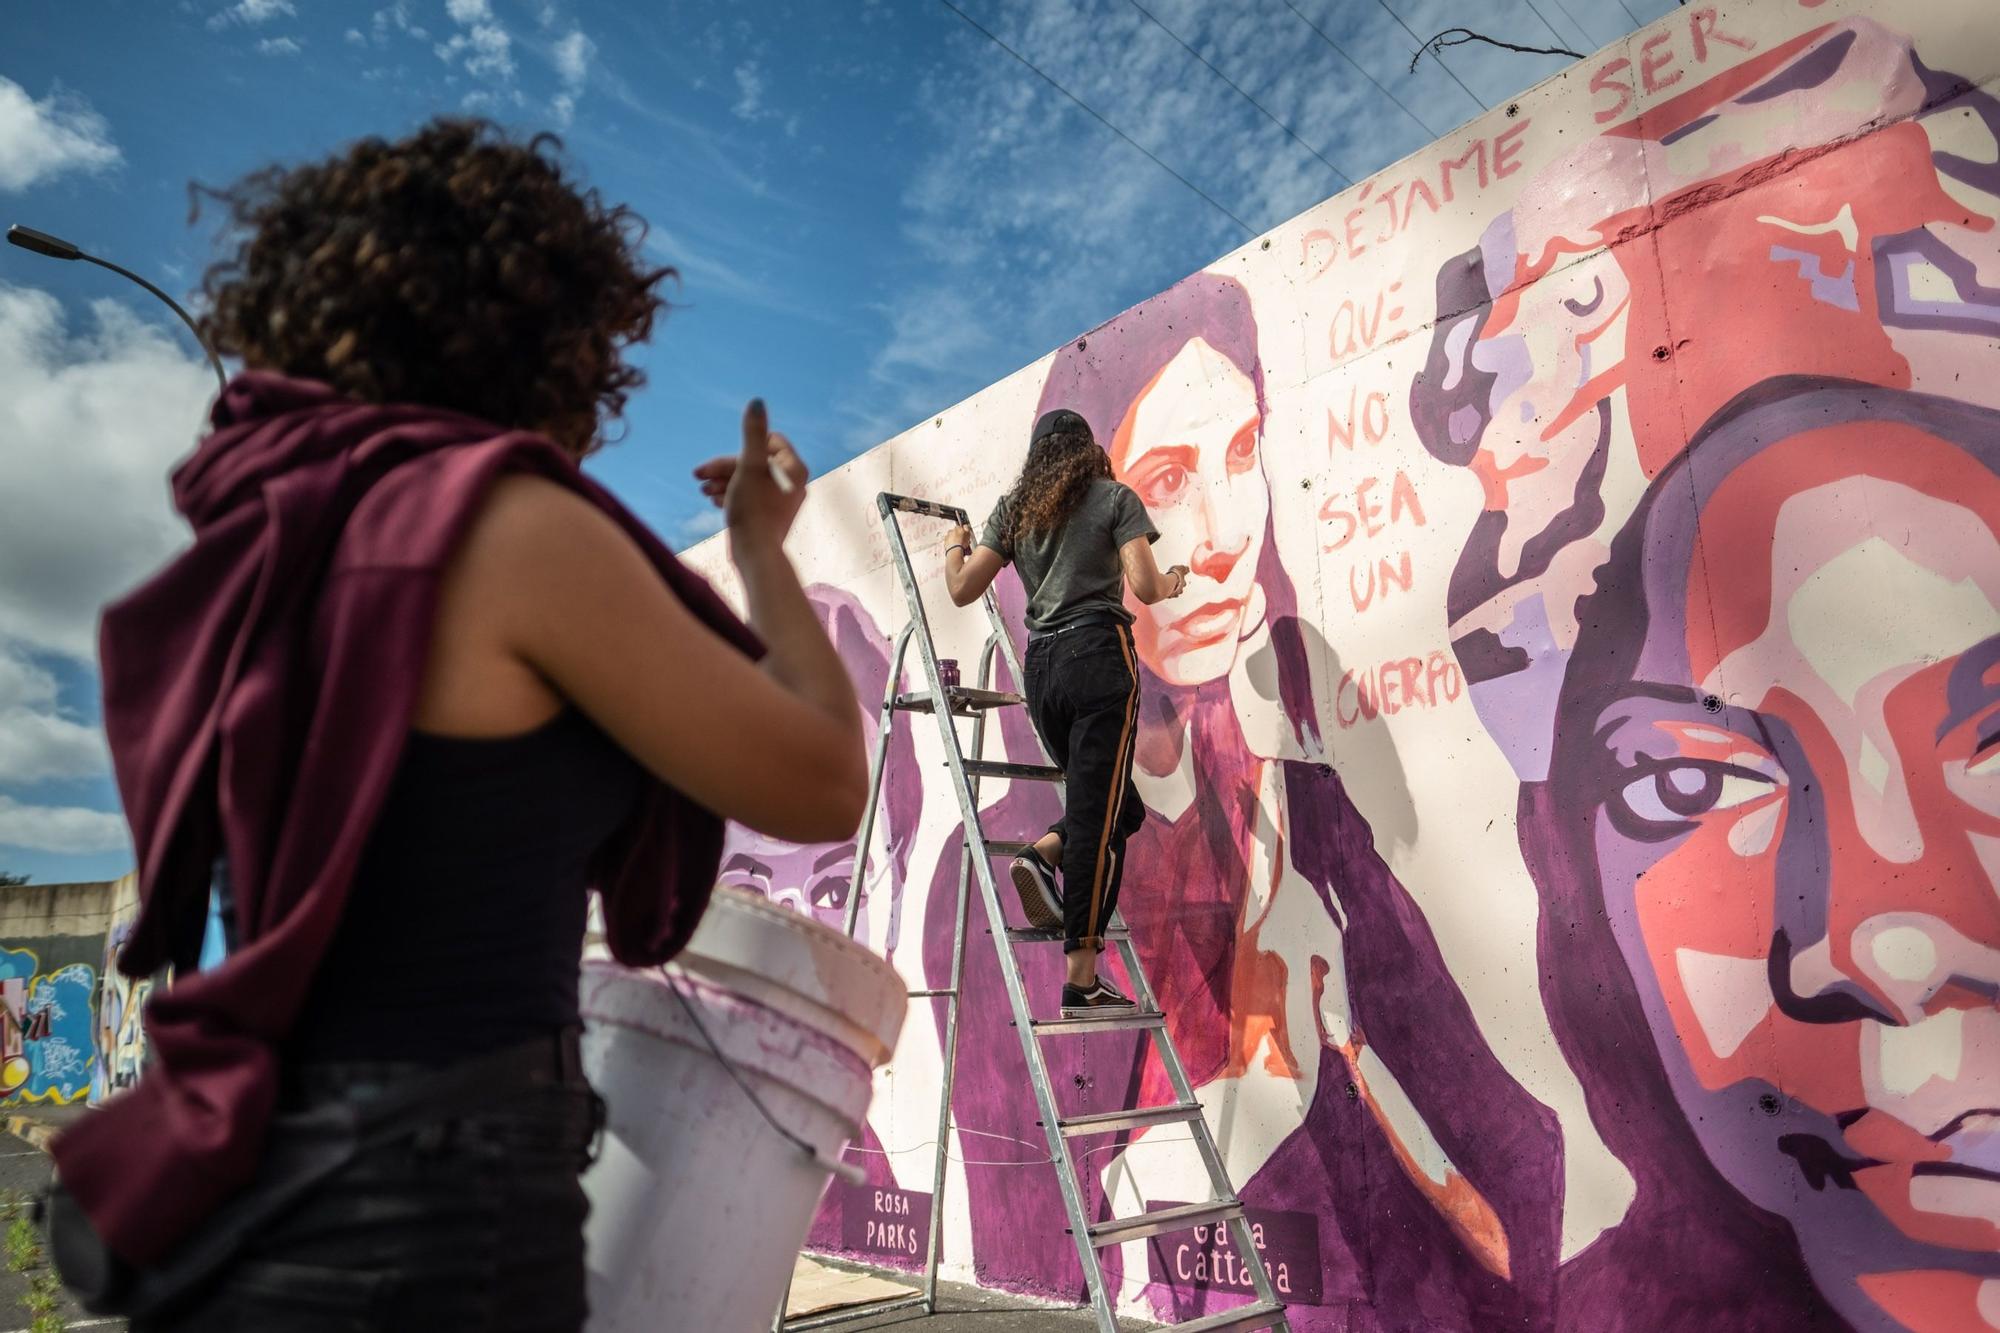 Jóvenes pintan un mural en La Laguna que fue vetado en Madrid